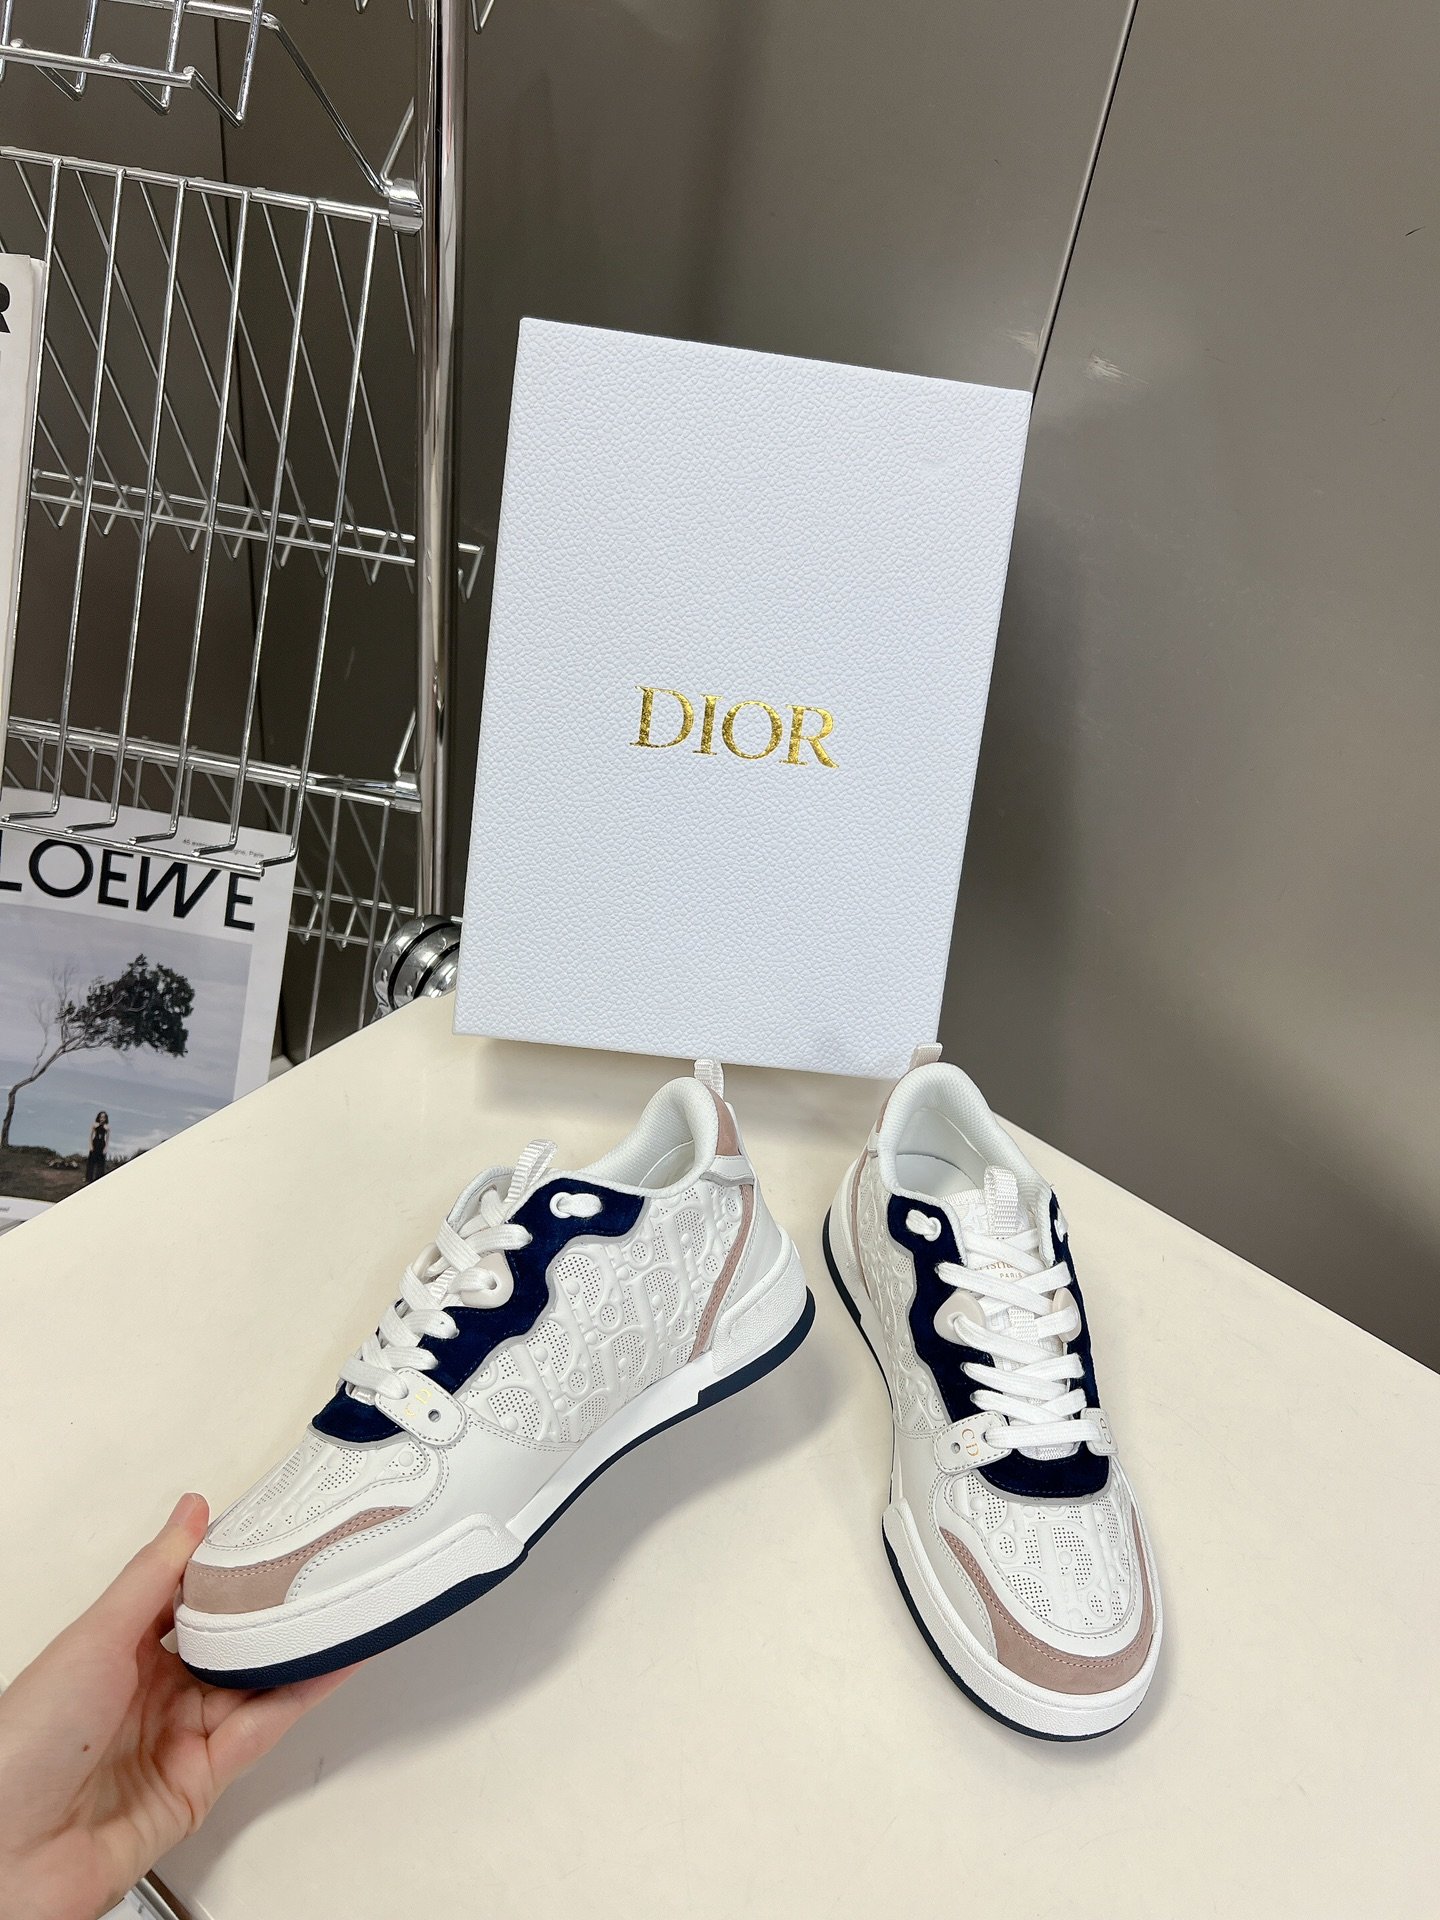 Dior迪奥春夏走秀款运动鞋情侣款一眼就爱上的小白鞋经典百搭四季皆宜可与各式服装搭配采用白色印花小牛皮革